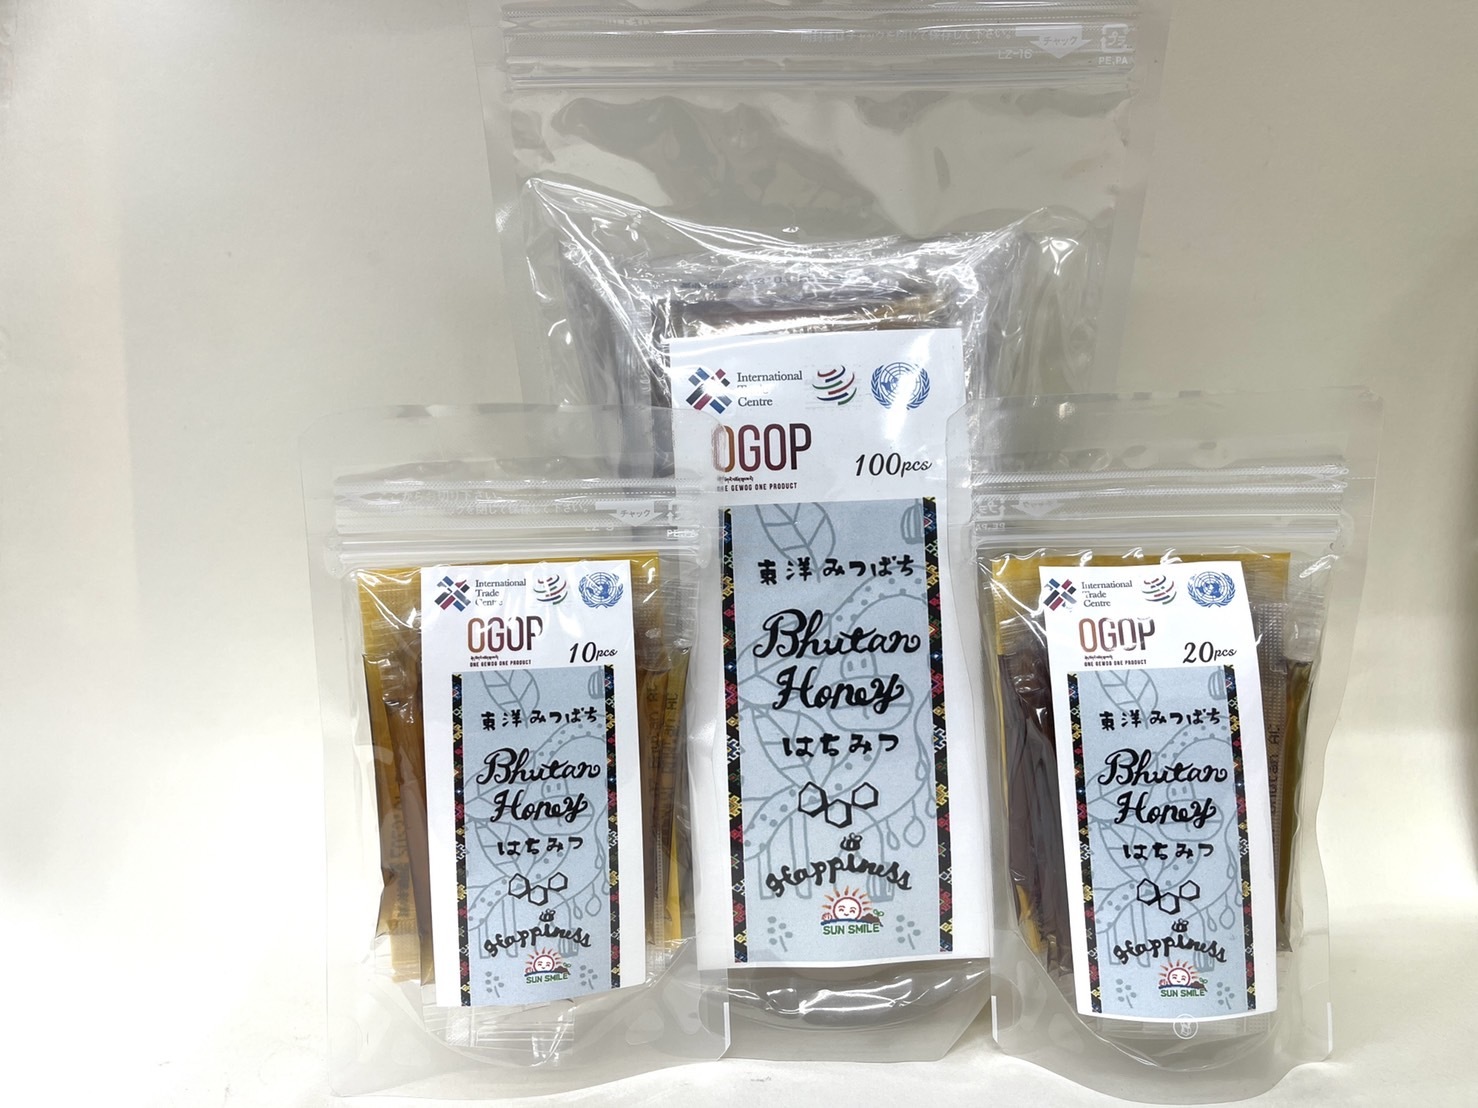 国連機関ITCの協力により
ブータン産OGOP　東洋ミツバチのはちみつを3月9日に発売